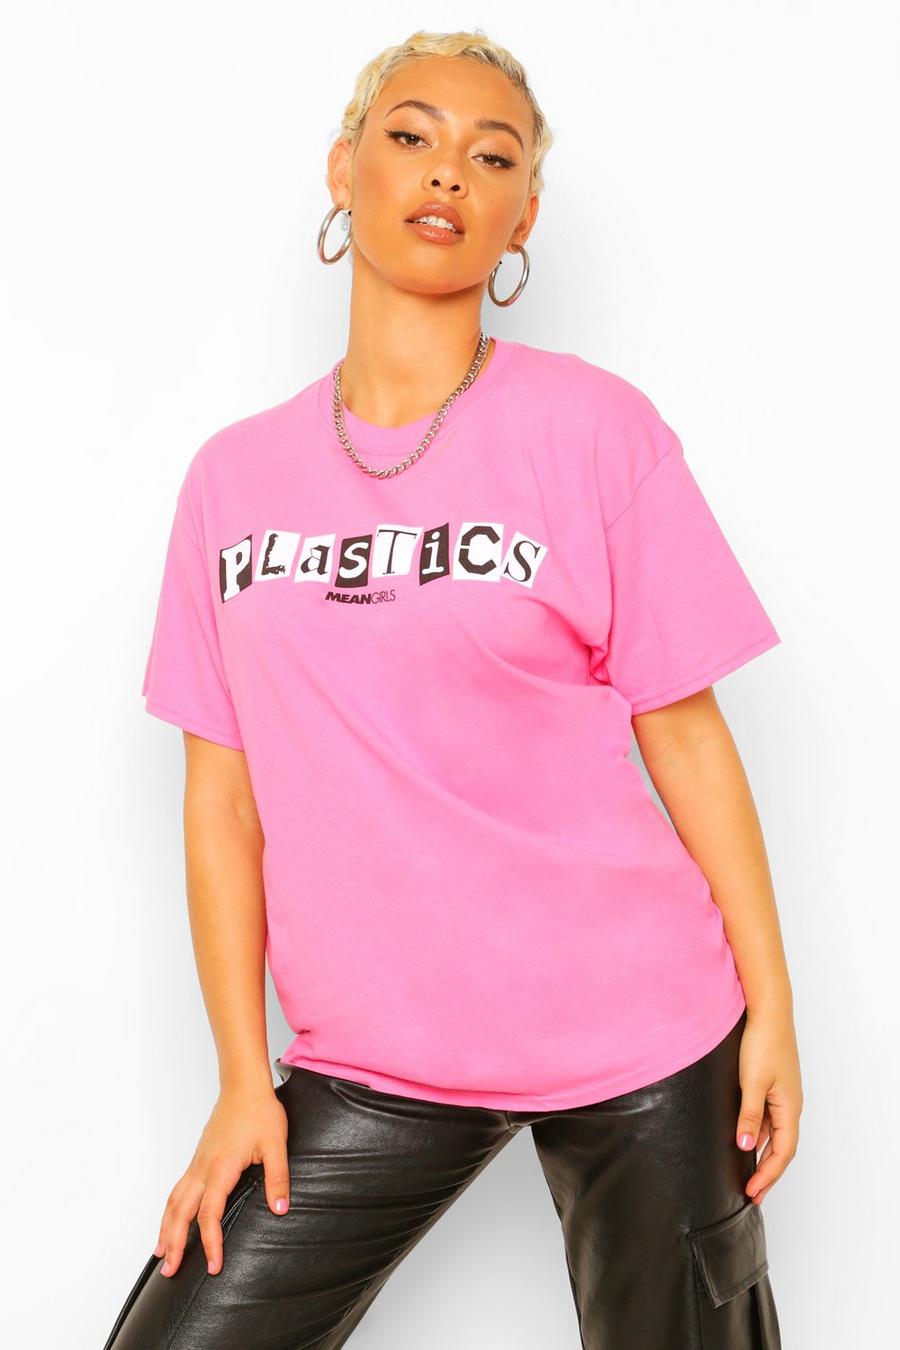 Camiseta con rótulo licenciado Plastics de Mean Girls image number 1